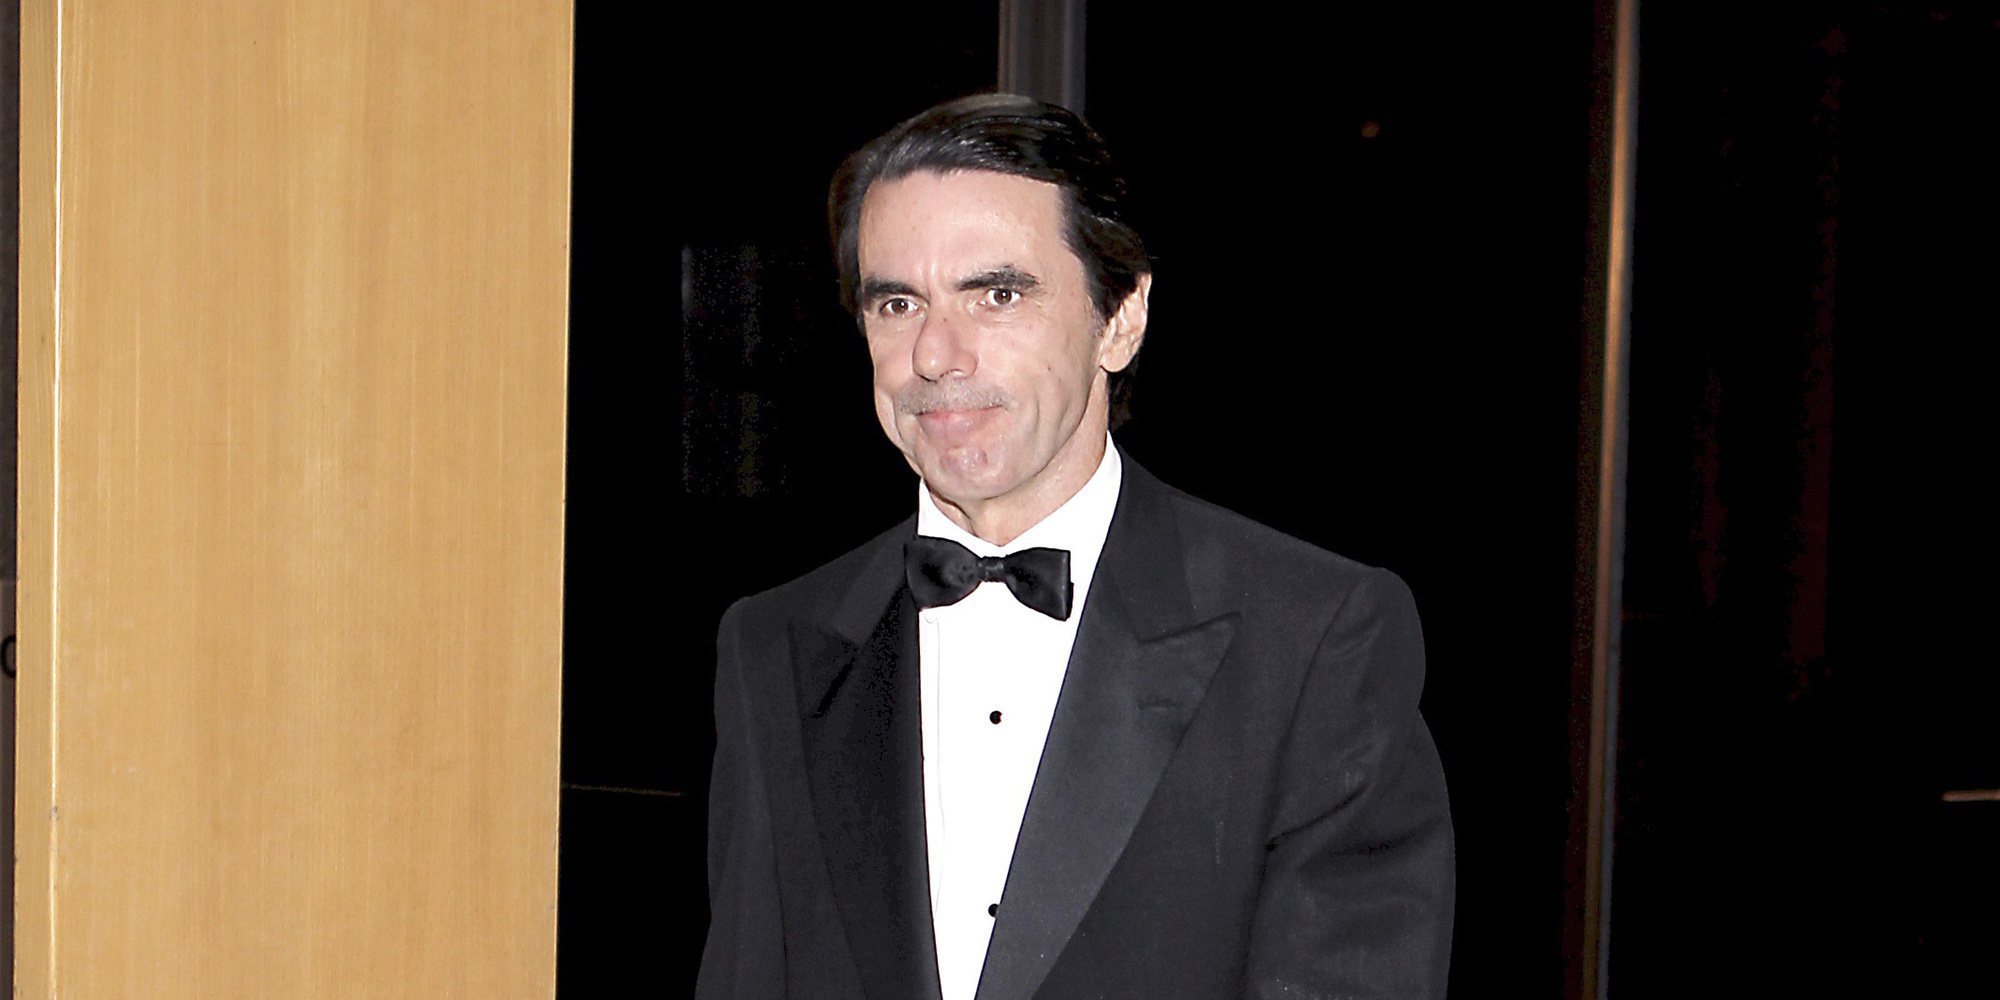 Los 5 momentos más polémicos protagonizados por José María Aznar